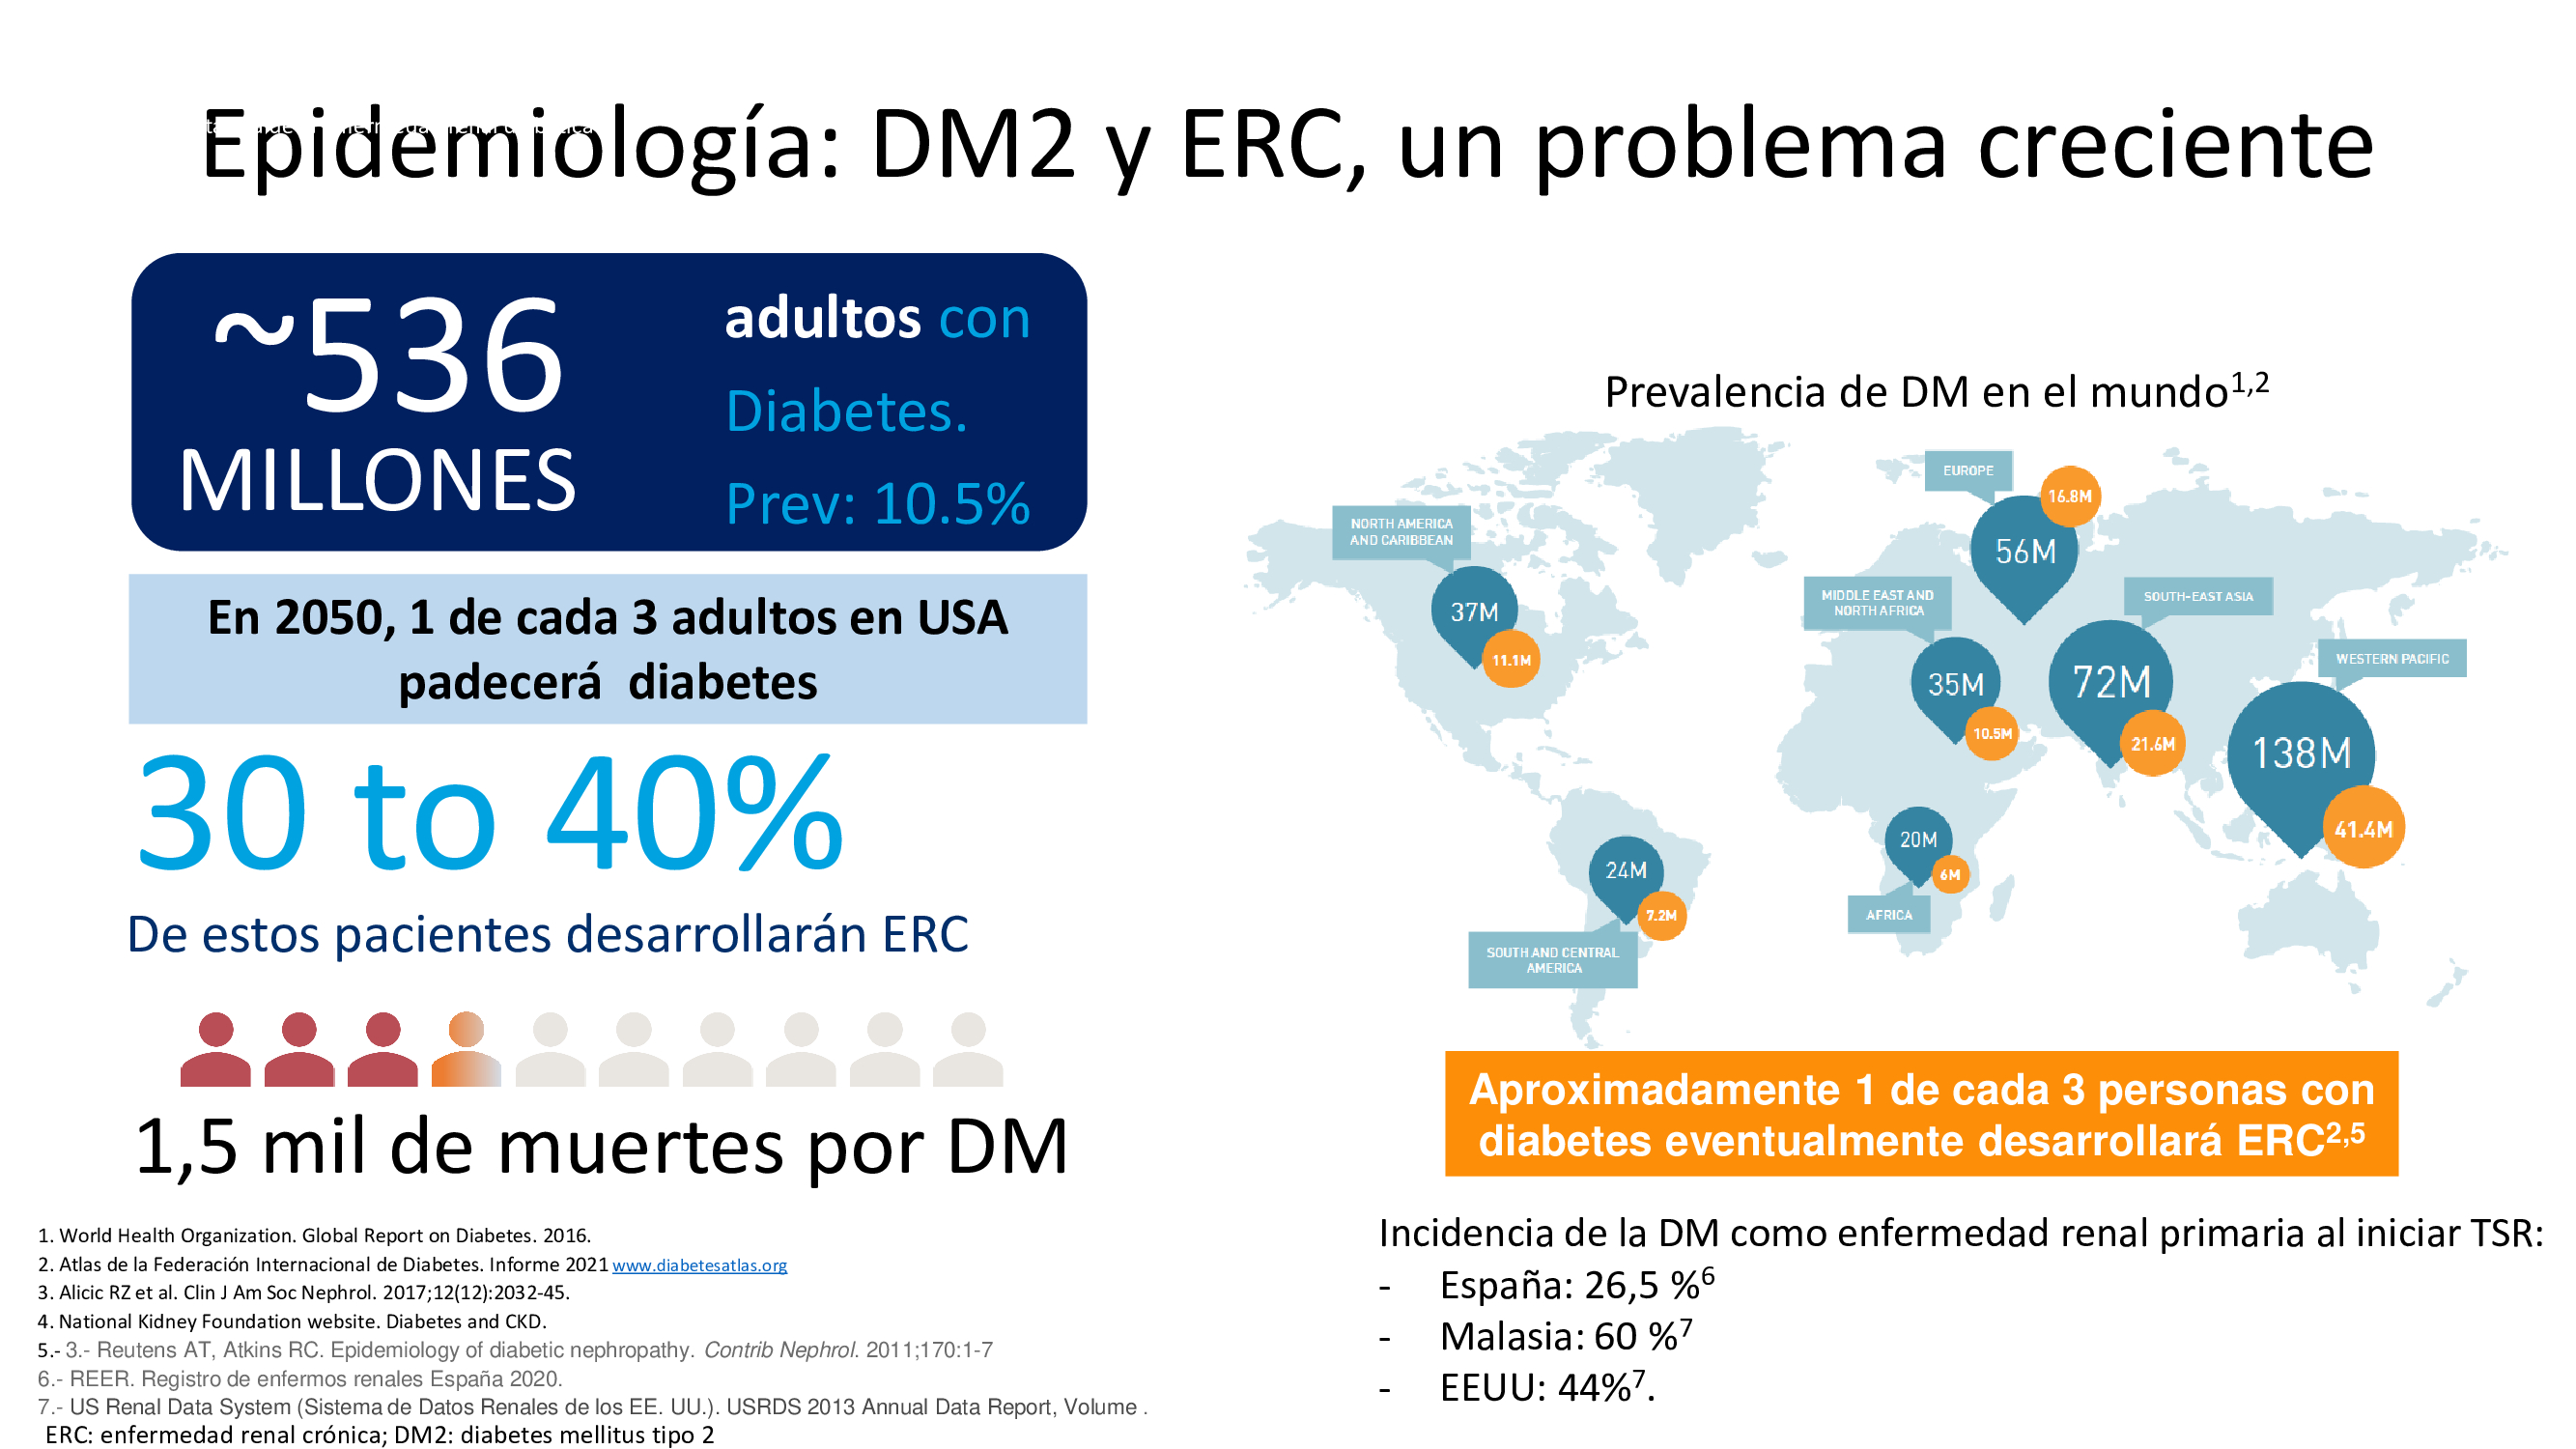 La enfermedad renal crónica (ERC) es una de las complicaciones más frecuentes de la diabetes mellitus tipo 2 (DMT2). En un estudio realizado en el ámbito de la atención primaria en España se observó una prevalencia del 27,9% para el conjunto de todos los estadios de la ERC (1).
En el informe de la Federacion Internacional de Diabetes se muestra que en el 2021 hay 536 millones de adultos con diabetes y entre el 30-40 % de los DM2 desarrollaran añgun grado de nefropatía a lo largo de su vida
Por otra parte la enfermedad renal crónica se asocia a elevada mortalidad cardiovascular. DM2 y ERC suponen una muy elevada mortalidad cardiovascular. 
Por ello es importante la prevención no solo de la progresión de la nefropatía sino la prevención de la mortalidad cardiovascular.
Datos de la Federacion internacional de diabetes muestran que la prevalencia de DM en el mundo es muy elevada y que uo de cada 3 pacientes desarrollará algun grado de afectación renal.
Los datos del mismo registro indican que en los países del Sudeste asiático la incidencia de DM como enfermedad renal primaria en los registro s de inicio de terapia sustitutiva renal (TSR) es del 60 % (en Malasia). En EEU es del 40 % y en España el registro re enfermos renales de la ONT ha mostrado que los datos de 2020 la incidencia de DM como enfermedad renal primaria en pacientes que inicrn TSR es del 26,5%
Ademas un aspecto muy relevante es que la DM y especialmente la nefropatía diabetcia se asocia aun mayor riesgo de mortalidad, habiéndose producido mas de 1,5 millones de muertes por la DM y se prevé que en el 2040 serán 3,7 millones de muertes.
1.- A. Rodriguez-Poncelas, J. Garre-Olmo, J. Franch-Nadal, et al., Prevalence of chronic kidney disease in patients with type 2 diabetes in Spain: PERCEDIME2 study, BMC Nephrol. 14 (2013) 46. 